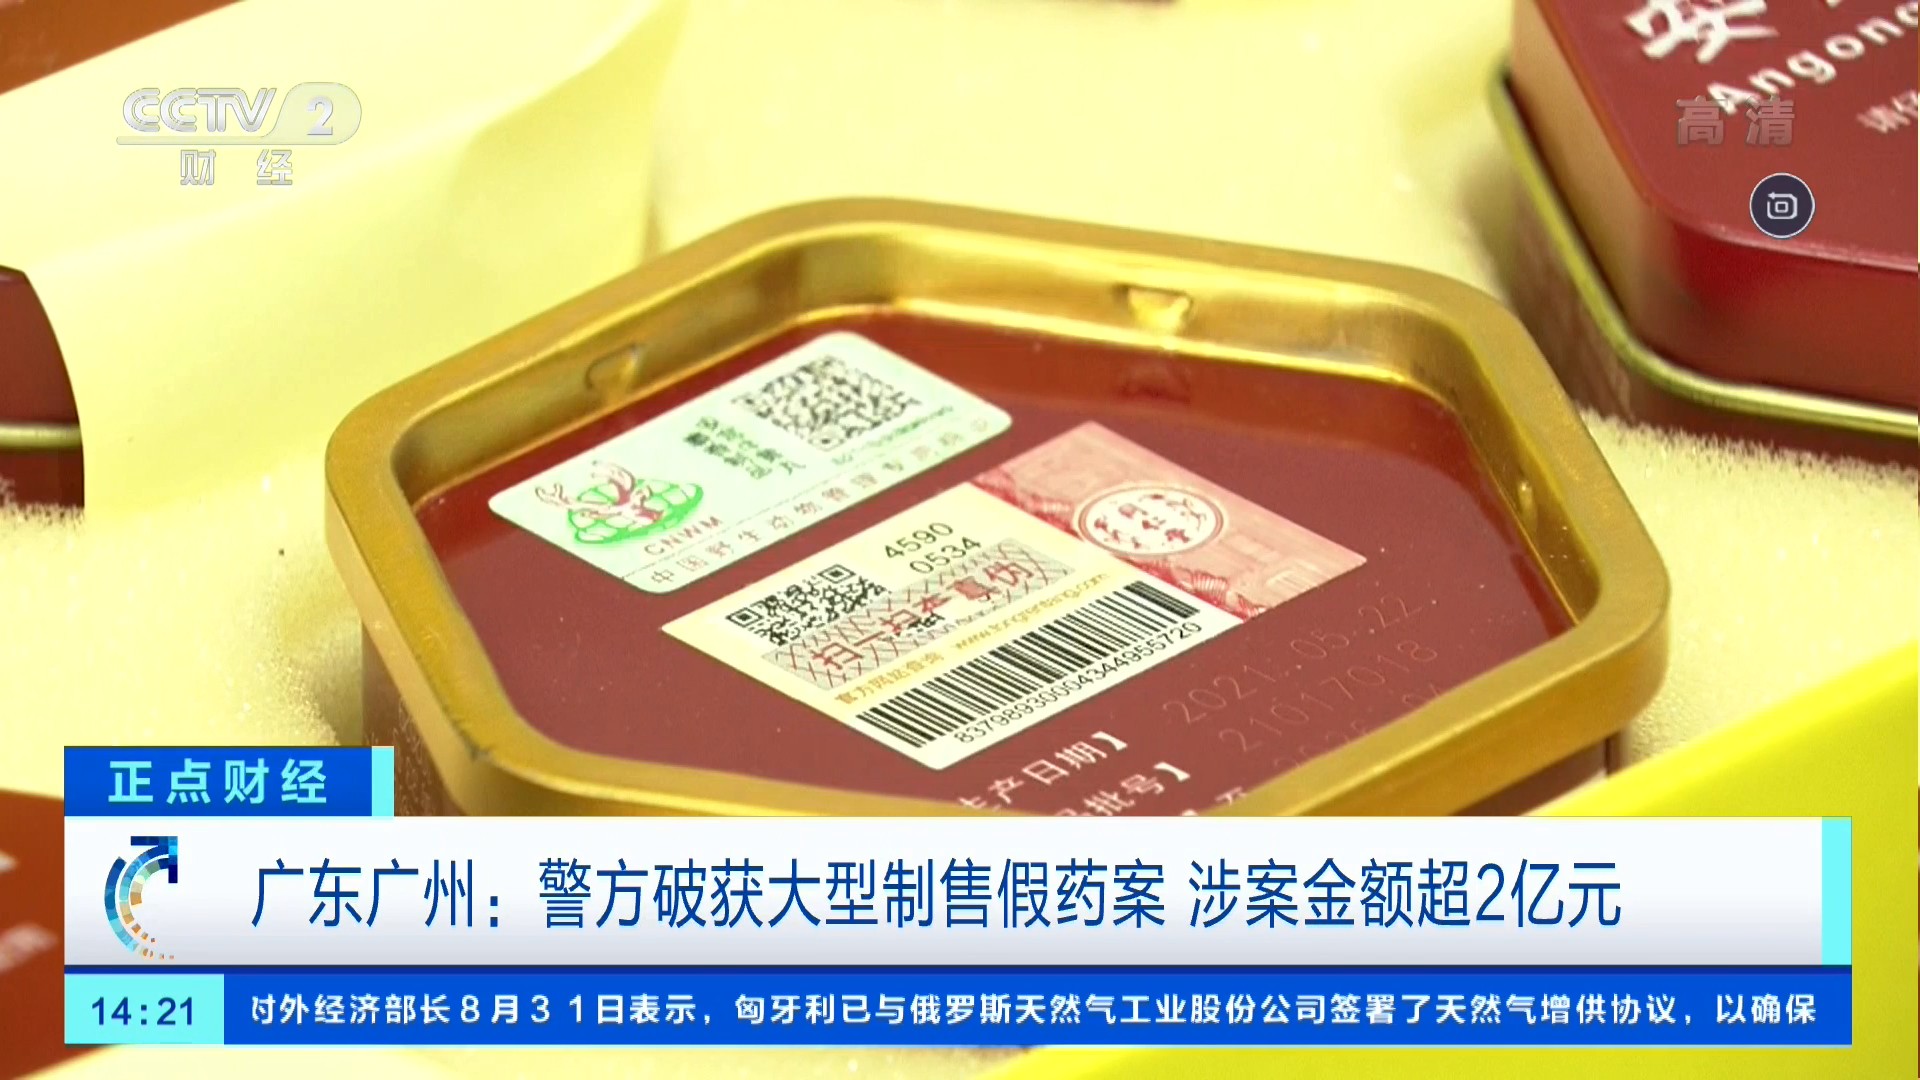 中央电视台CCTV-2财经频道 正点财经 广东广州：警方破获大型制售假药案 涉案金额超2亿元